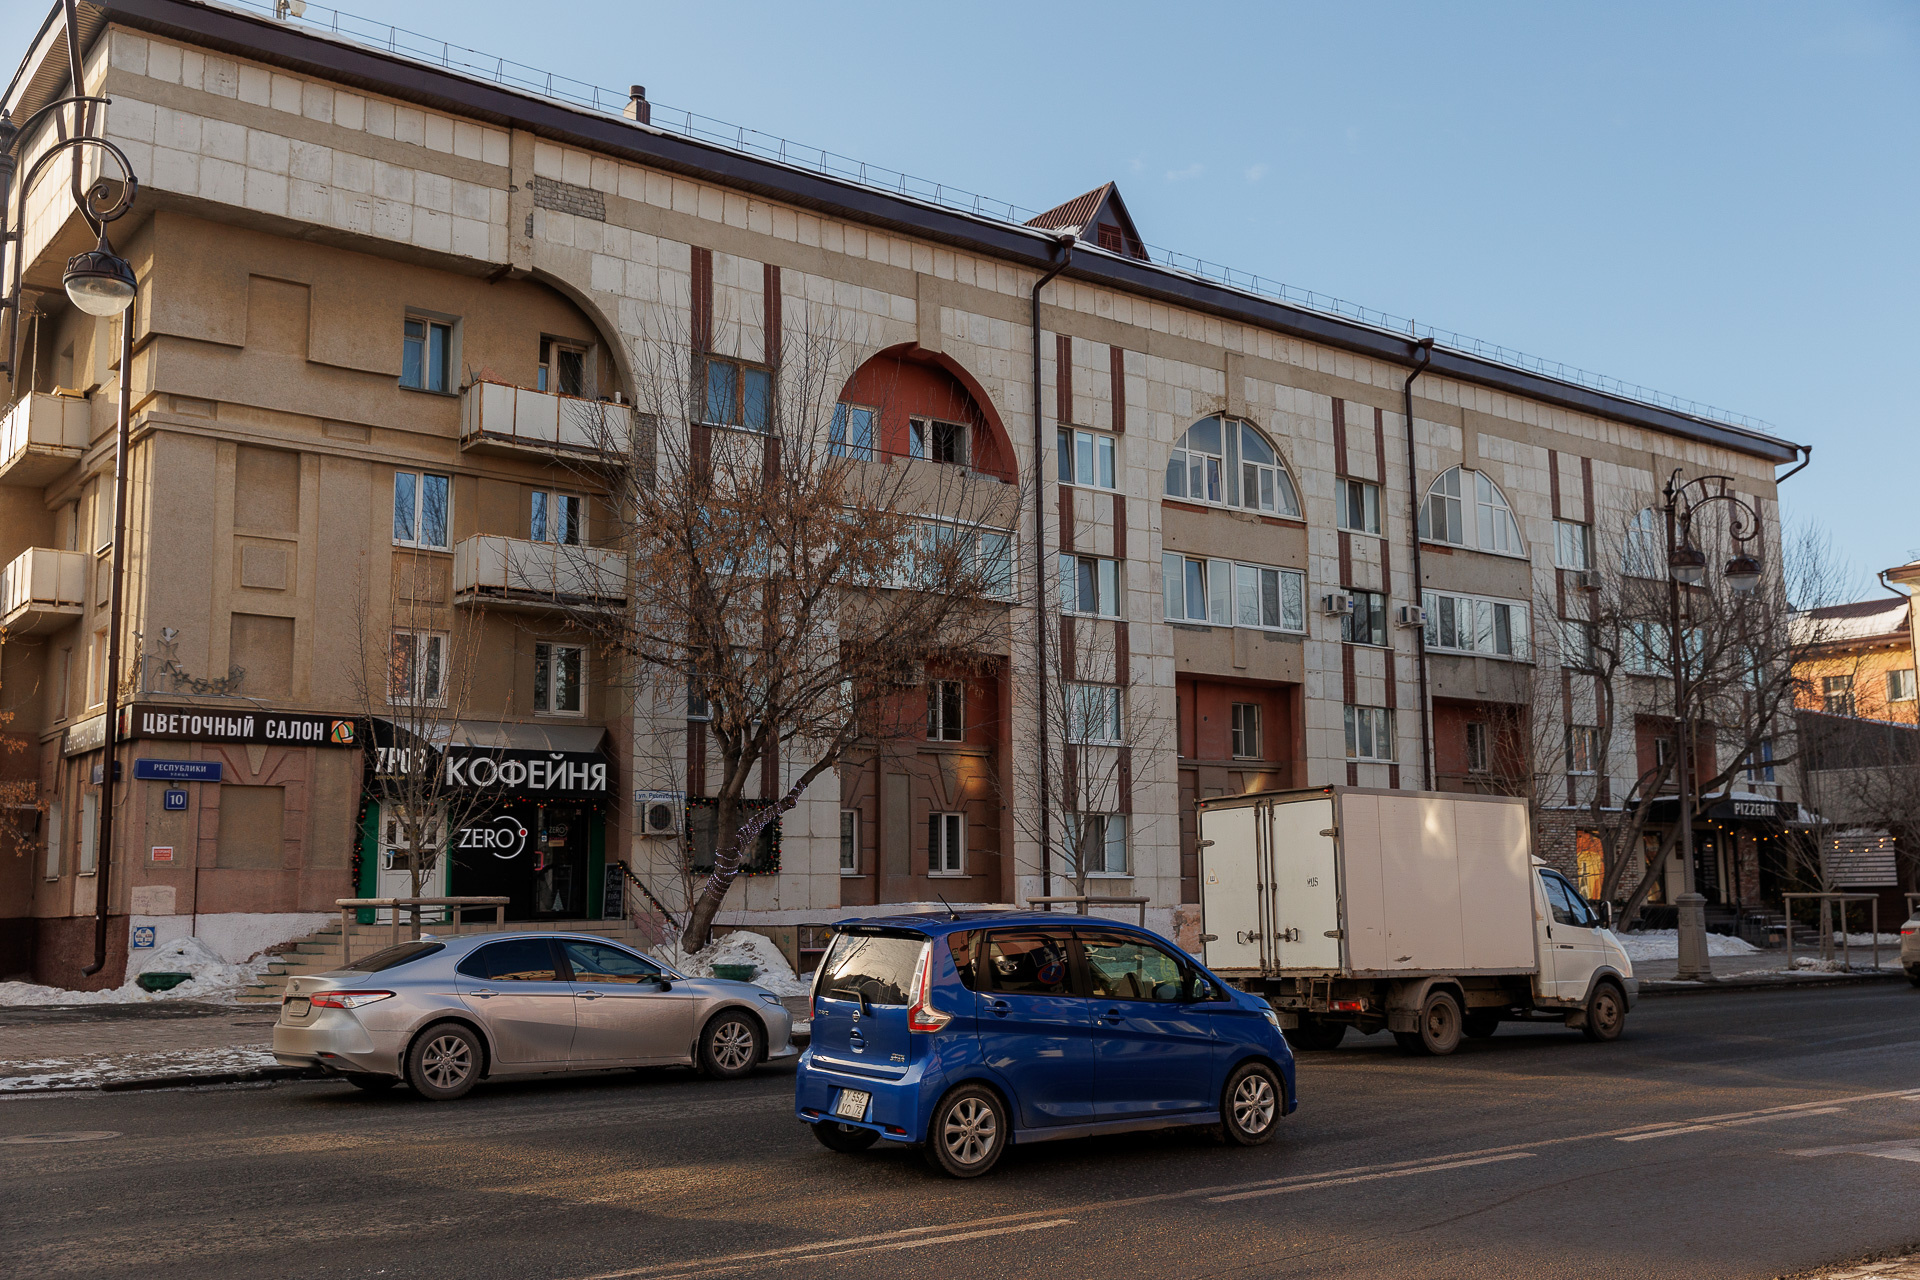 Между улицами Перекопской и Красина располагаются пятиэтажки необычной архитектуры.